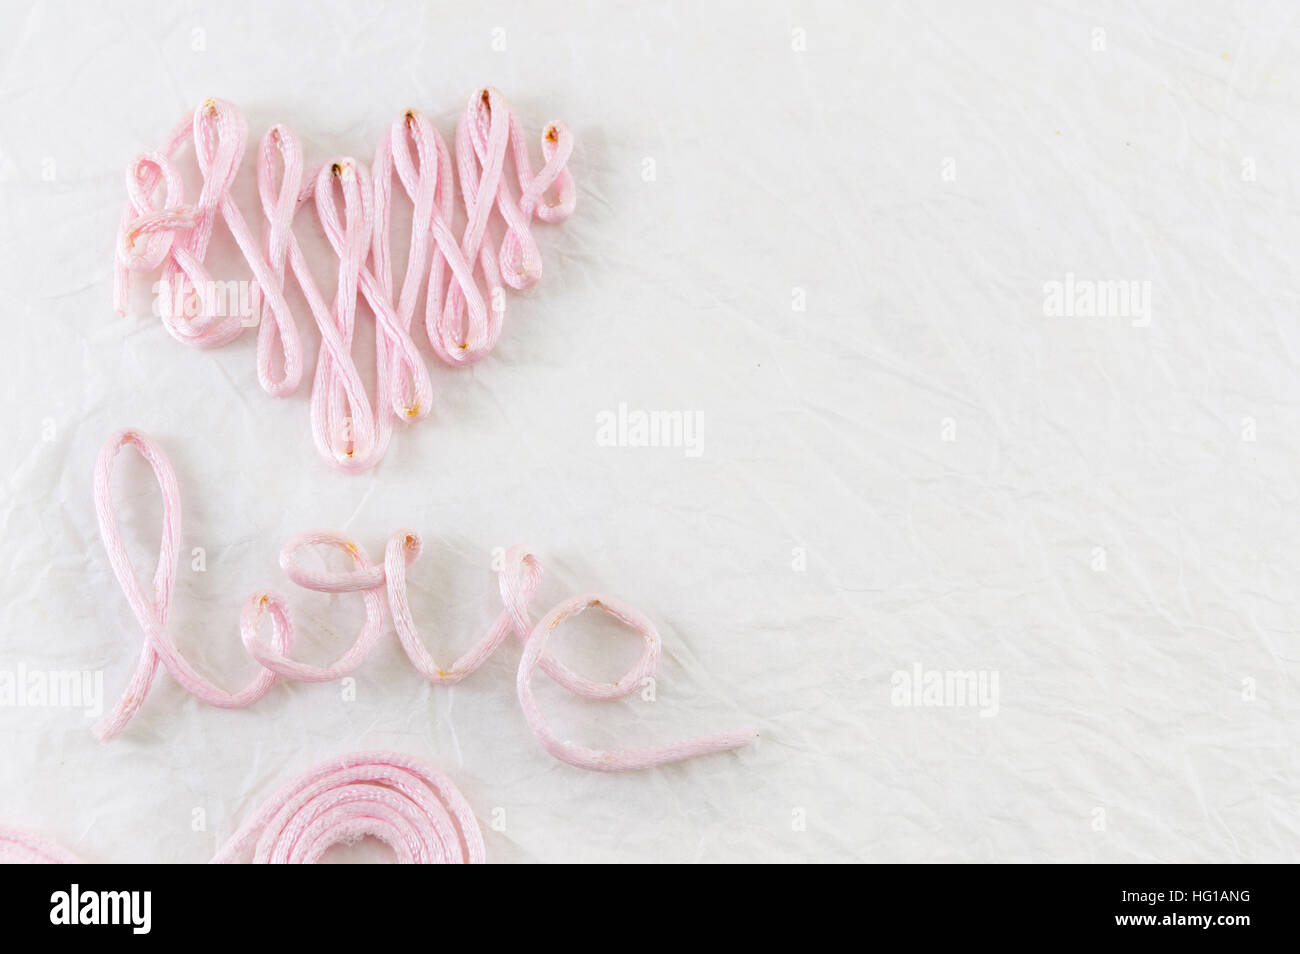 Wort-Liebe gemacht aus rosa Nähgarn Stockfoto